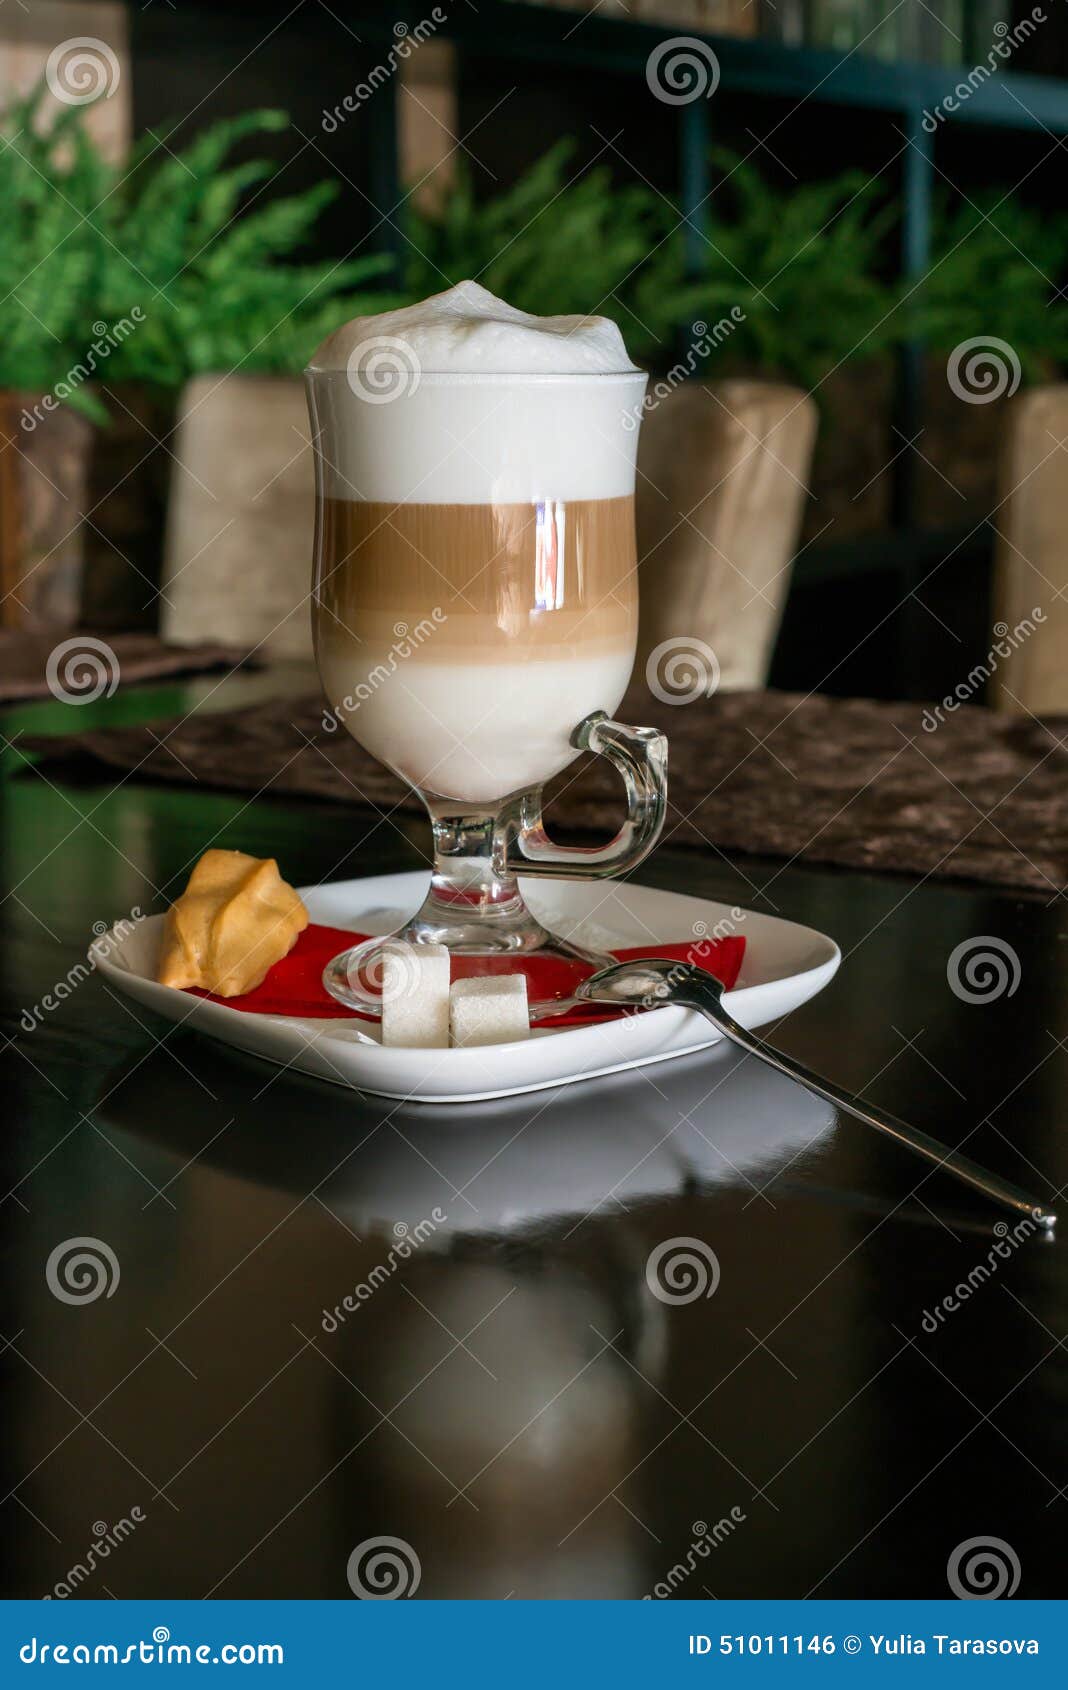 coffee latte in transparent glass silver in cafe, latte macchiato